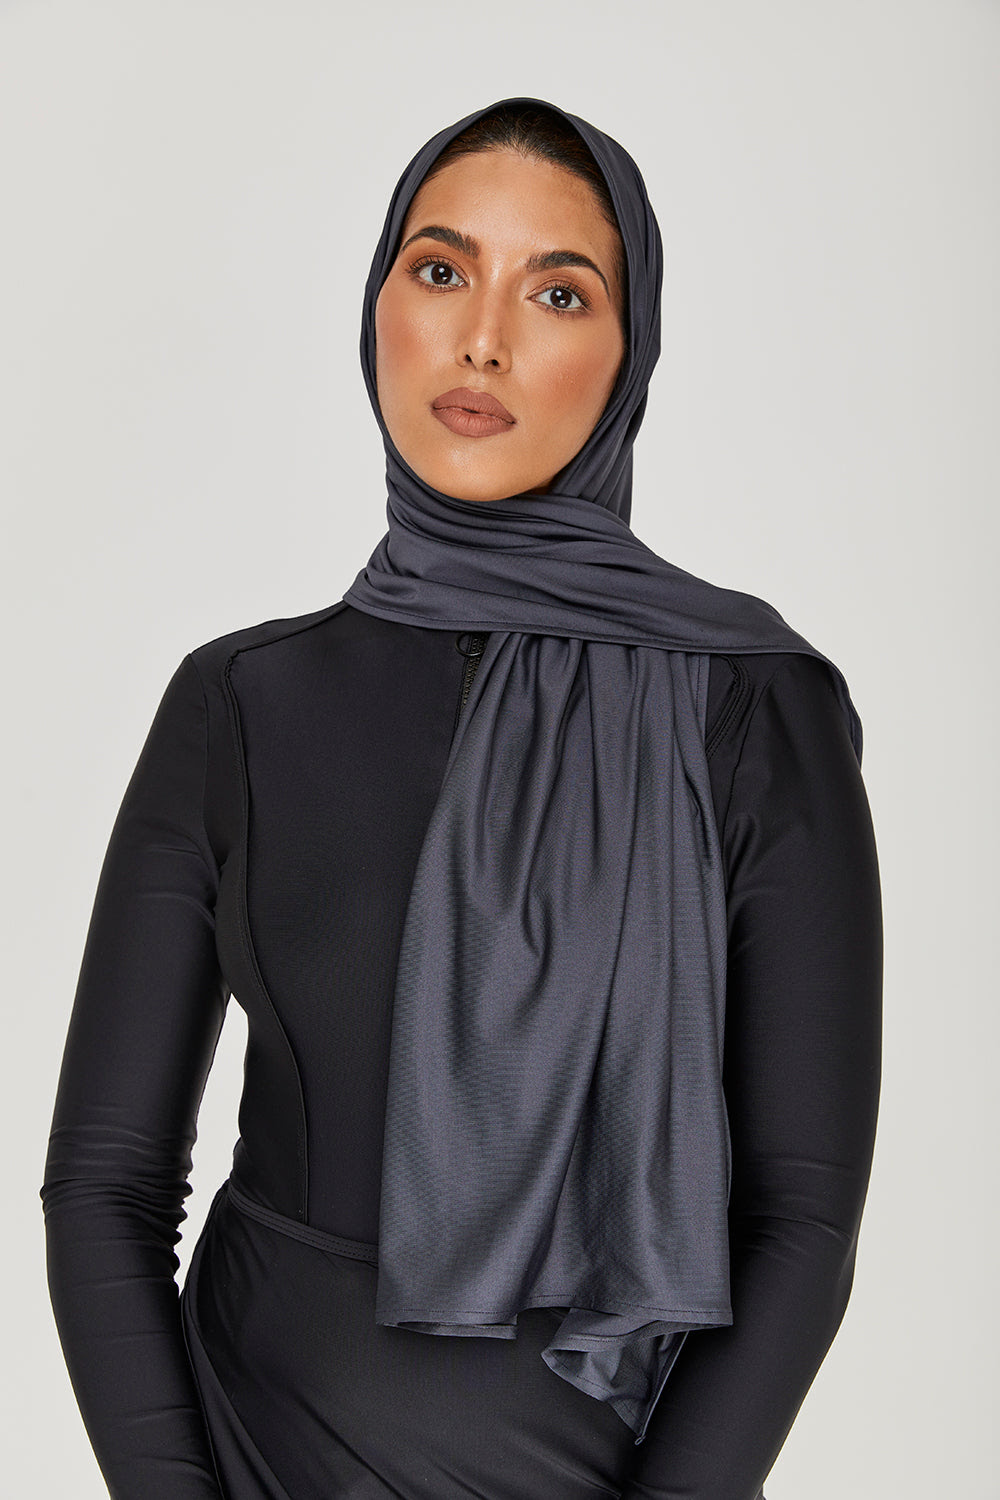 Image de Wrap Hijab - Charbon